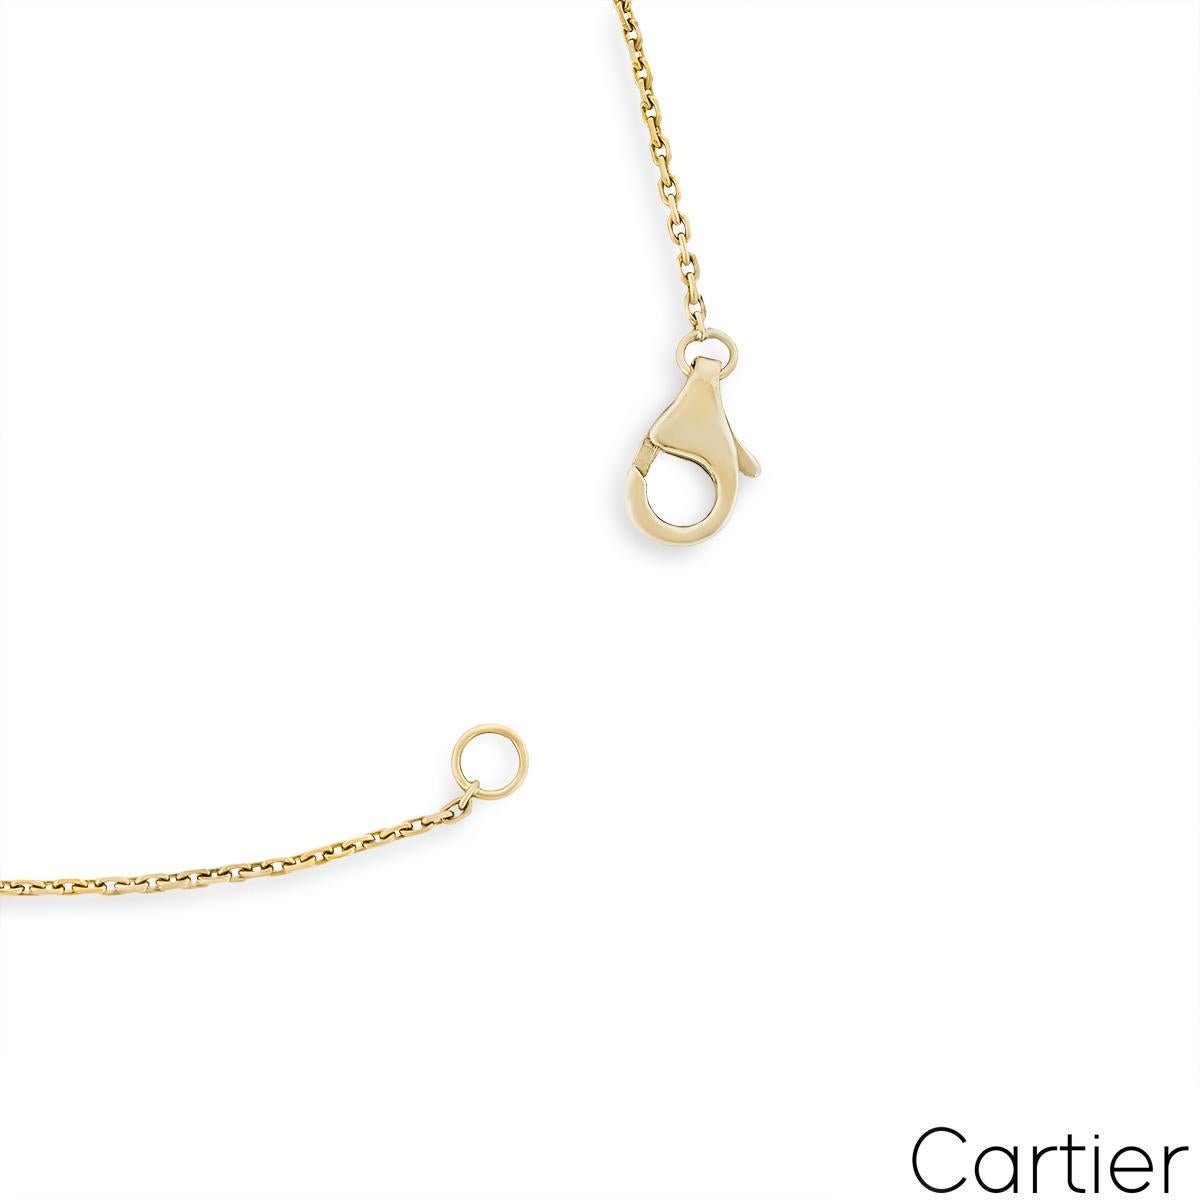 Round Cut Yellow Gold Lapis & Diamond Amulette De Cartier Necklace For Sale